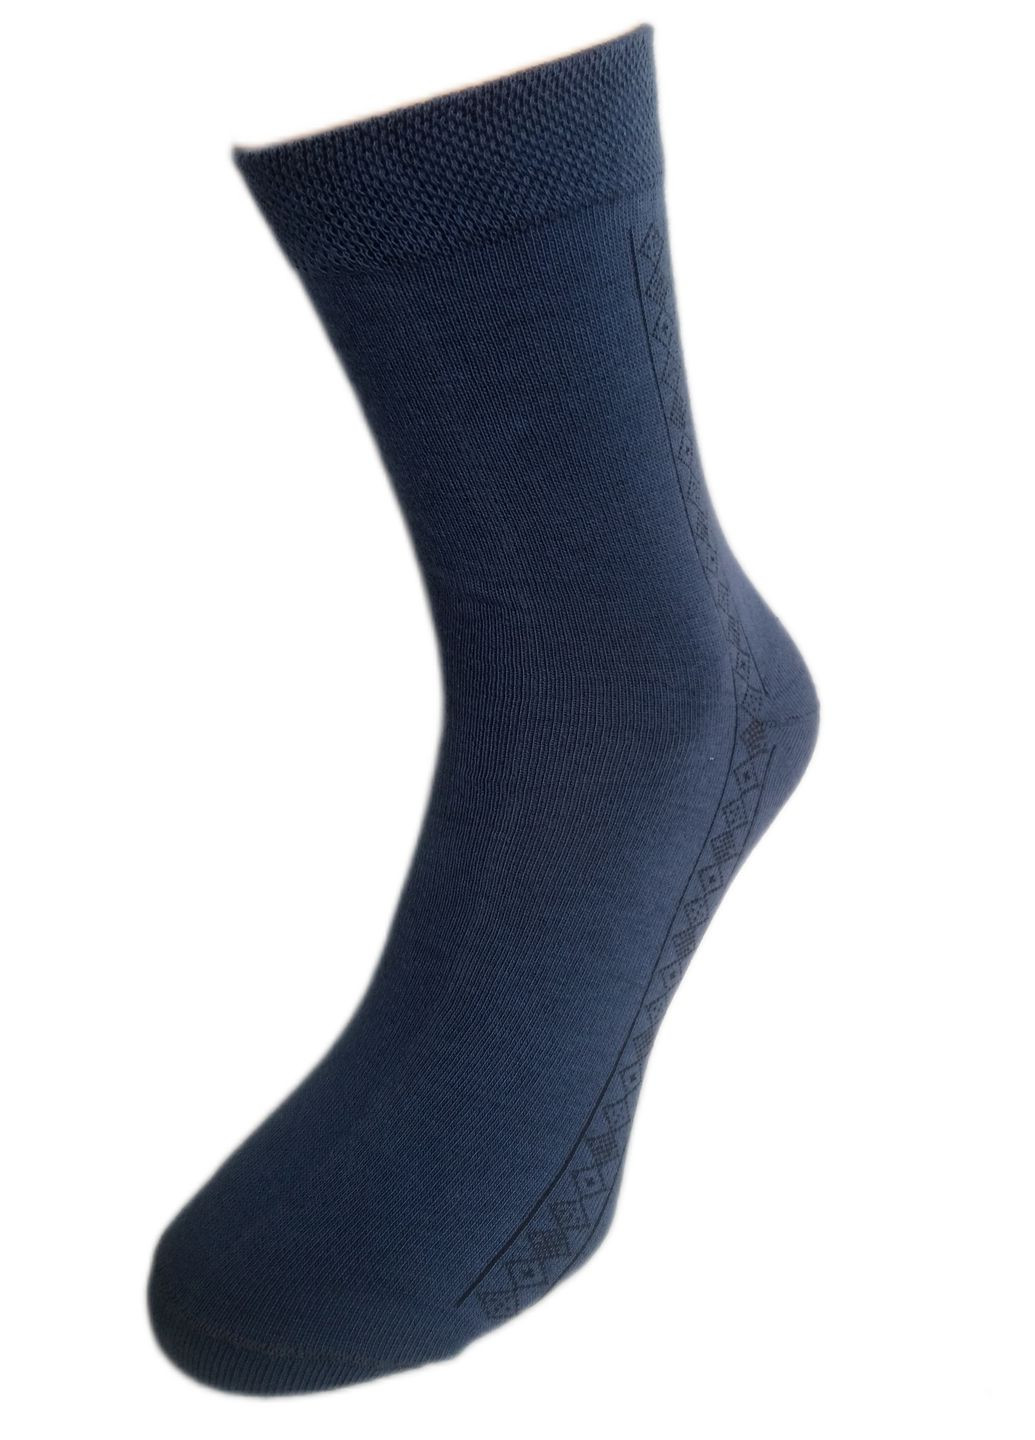 Шкарпетки чоловічі ТМ "Нова пара" 421, НОВА ПАРА середня висота (260339139)